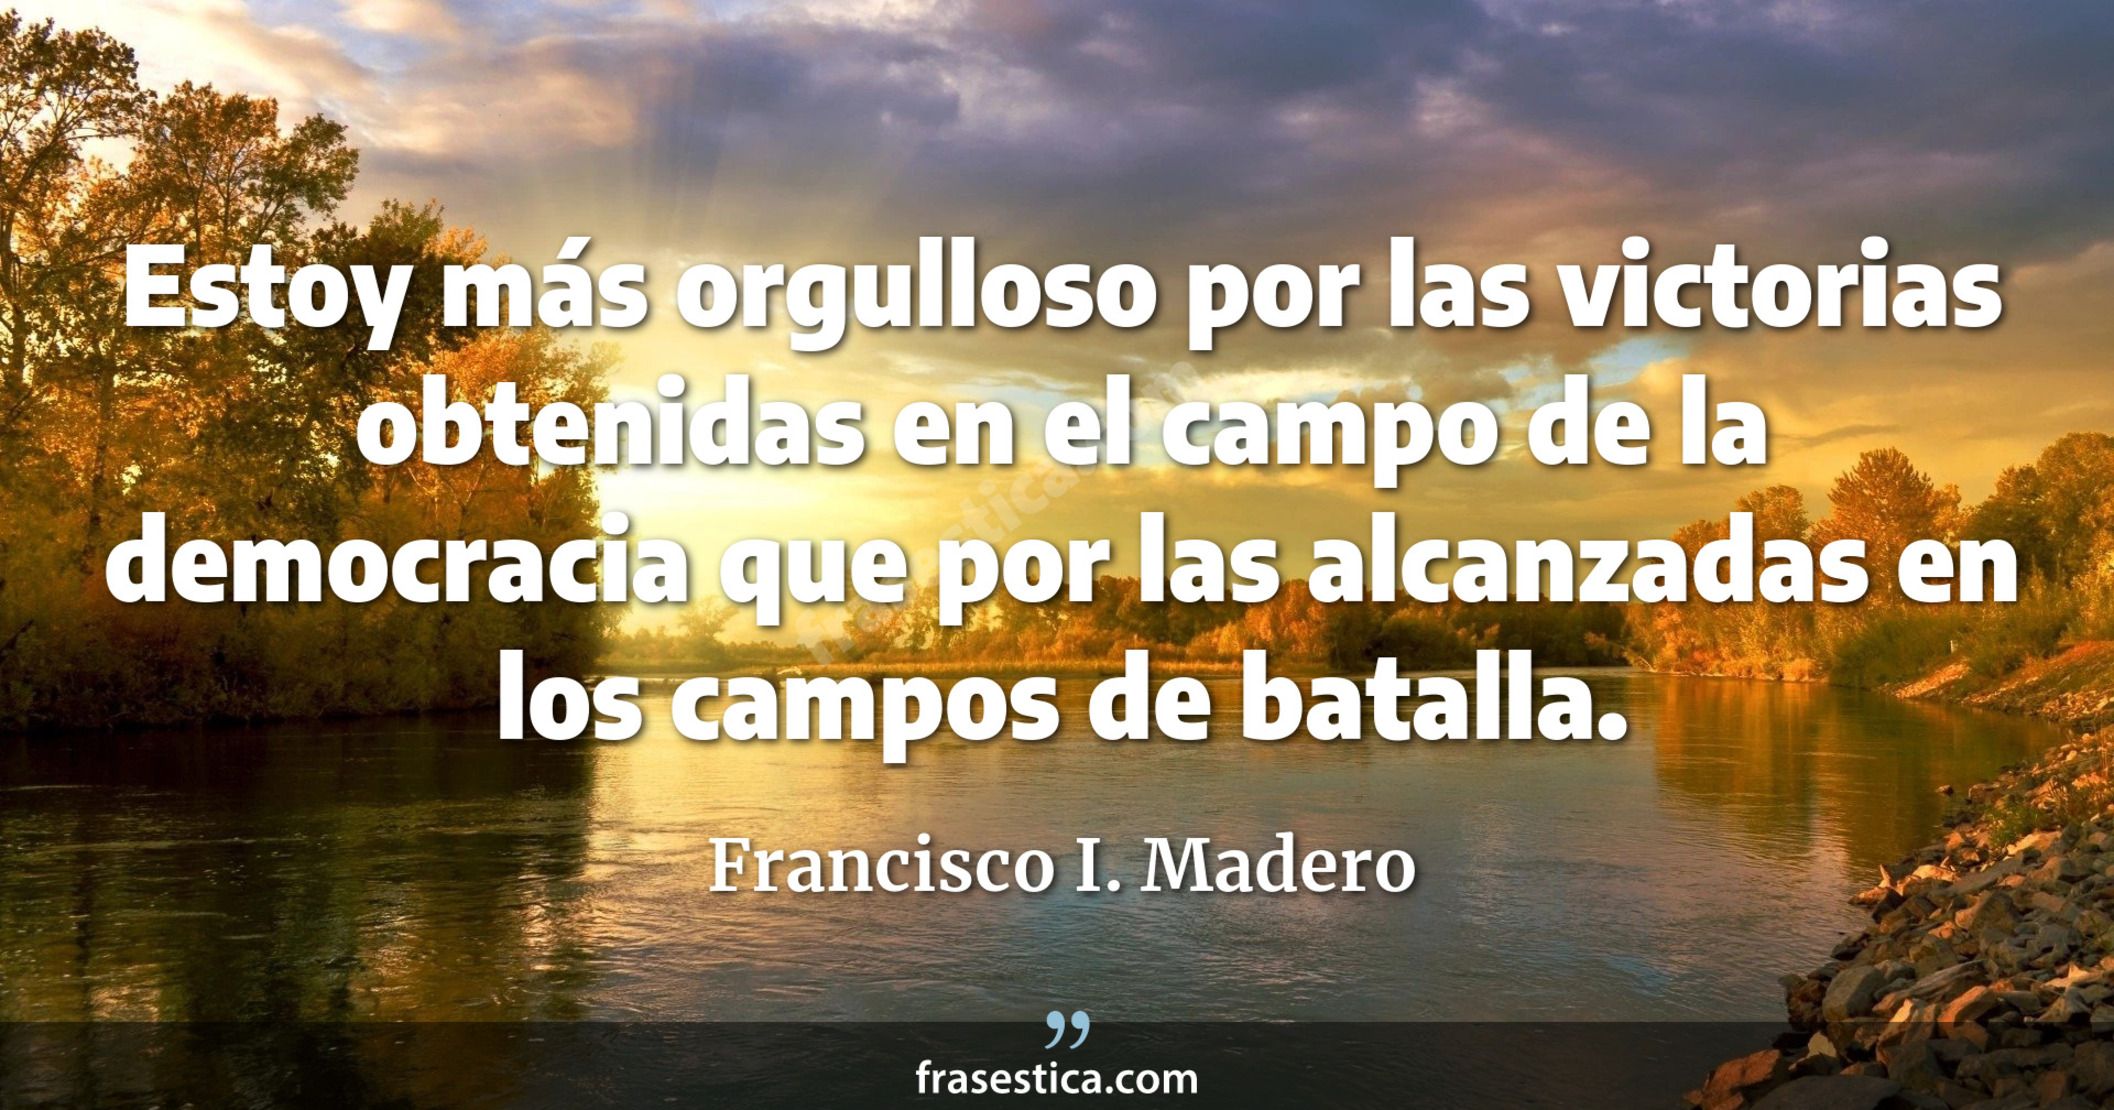 Estoy más orgulloso por las victorias obtenidas en el campo de la democracia que por las alcanzadas en los campos de batalla. - Francisco I. Madero